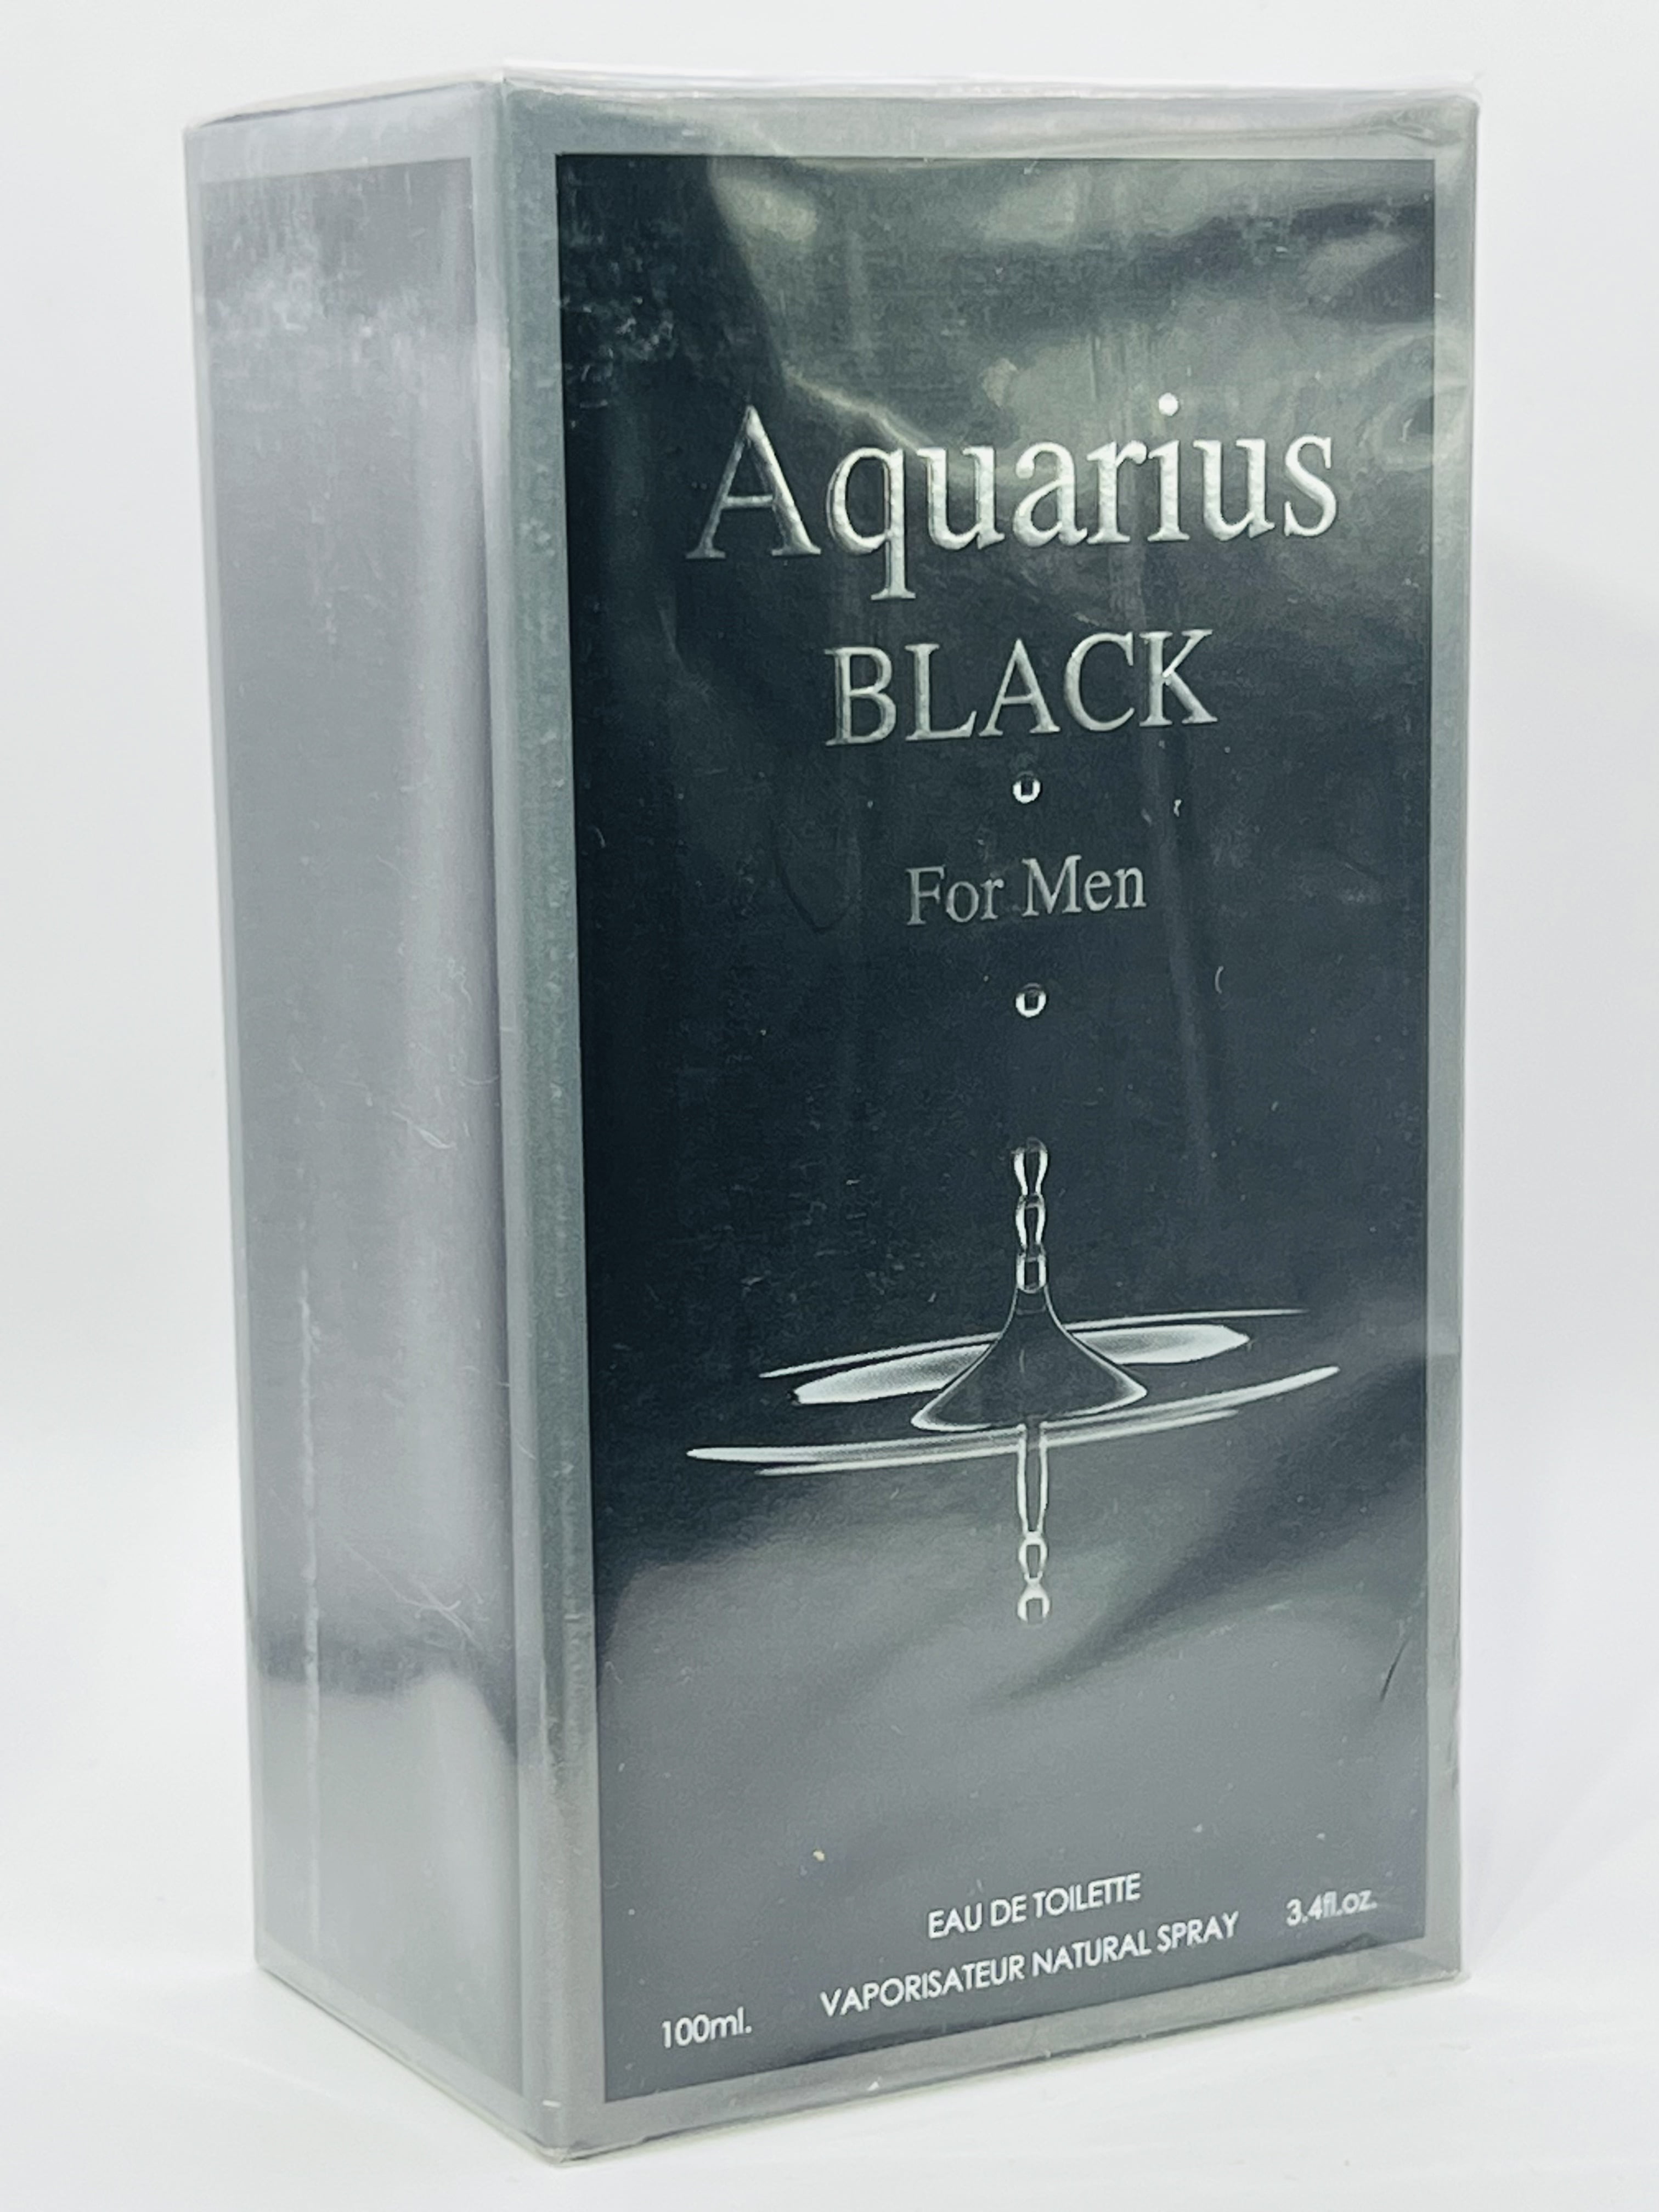  Aquarius Black Cologne for Men 3.4 fl.oz. : Beauty & Personal  Care